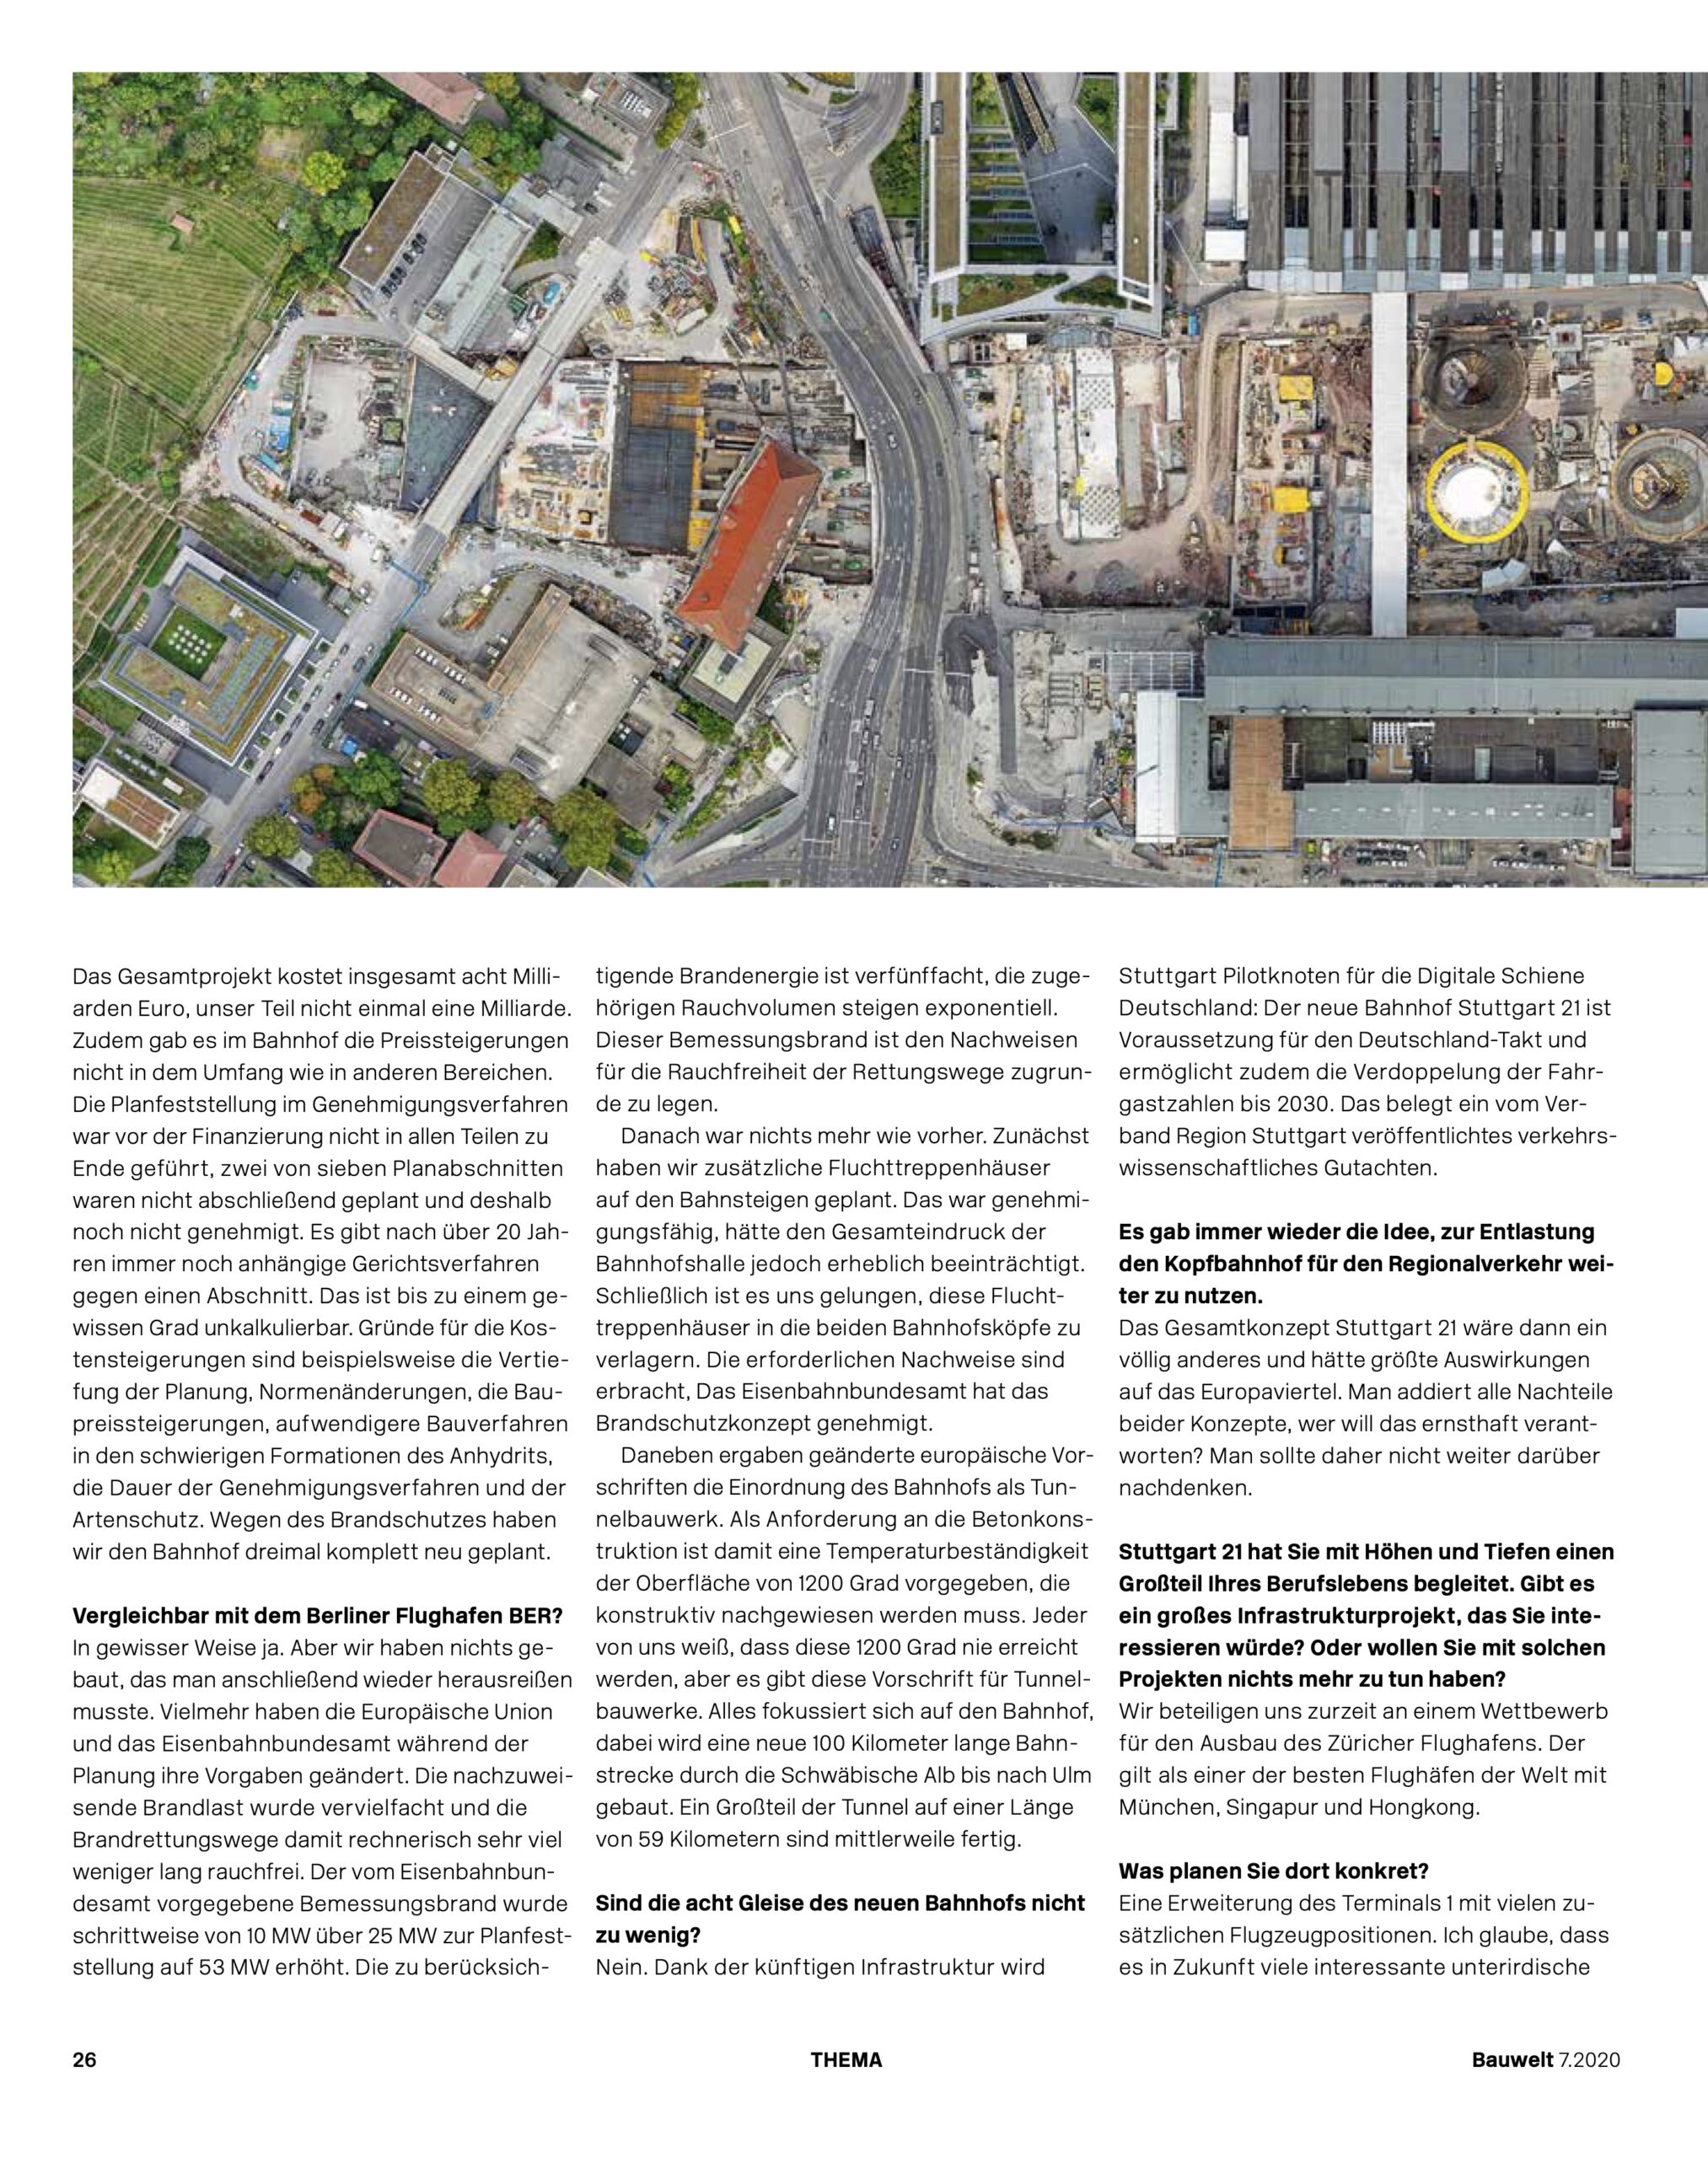 Bauwelt Magazin über Stuttgart 2020 10 Jahre Stuttgart 21, Interview mit Christoph Ingenhoven